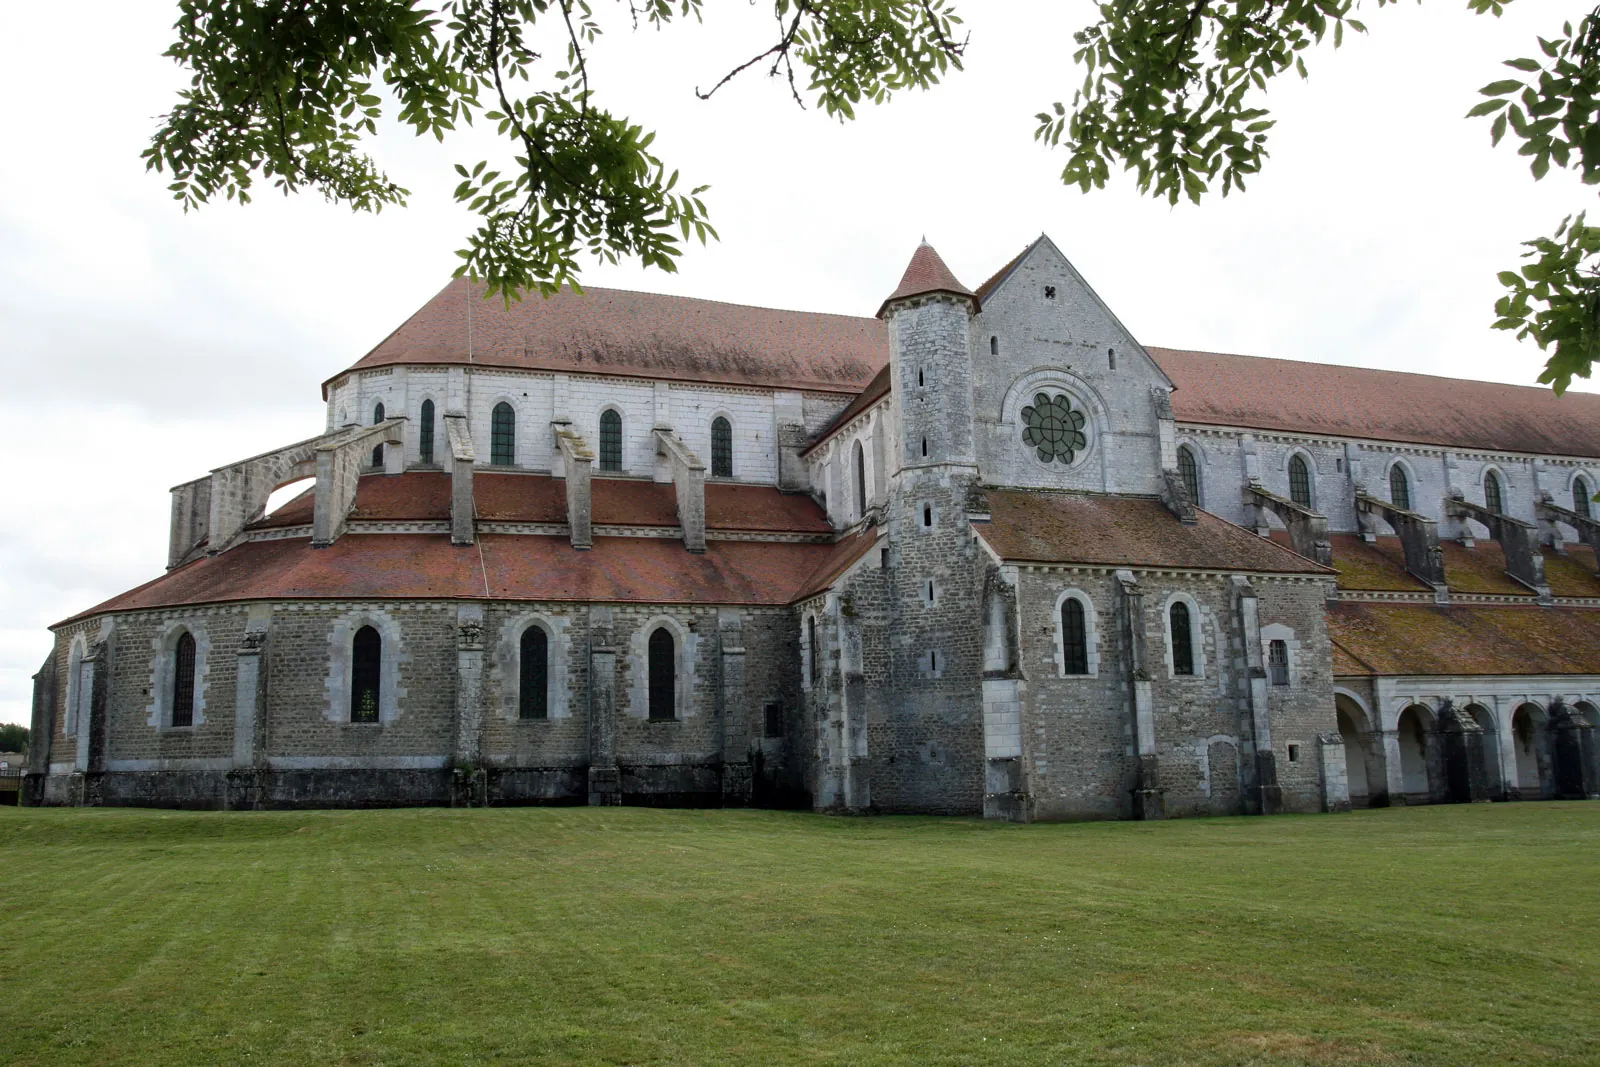 De kloosterkerk in Pontigny is gebouwd in de twaalfde eeuw